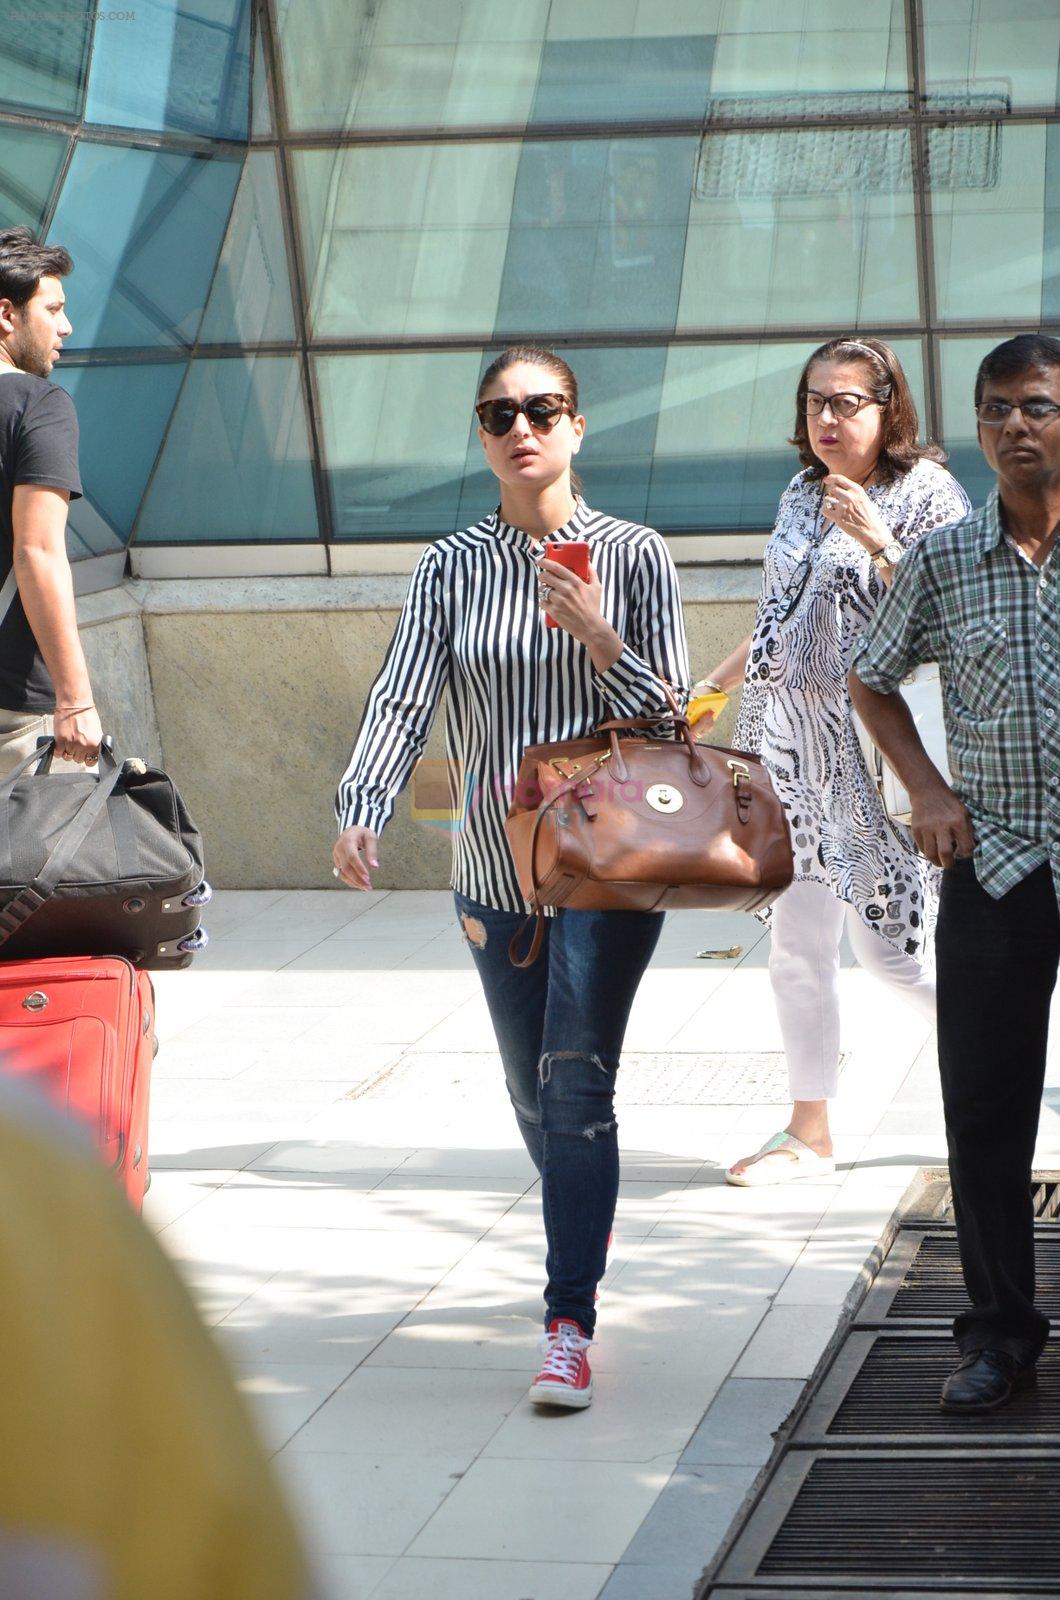 Kareena Kapoor, Babita snapped at airport on 16th Nov 2015